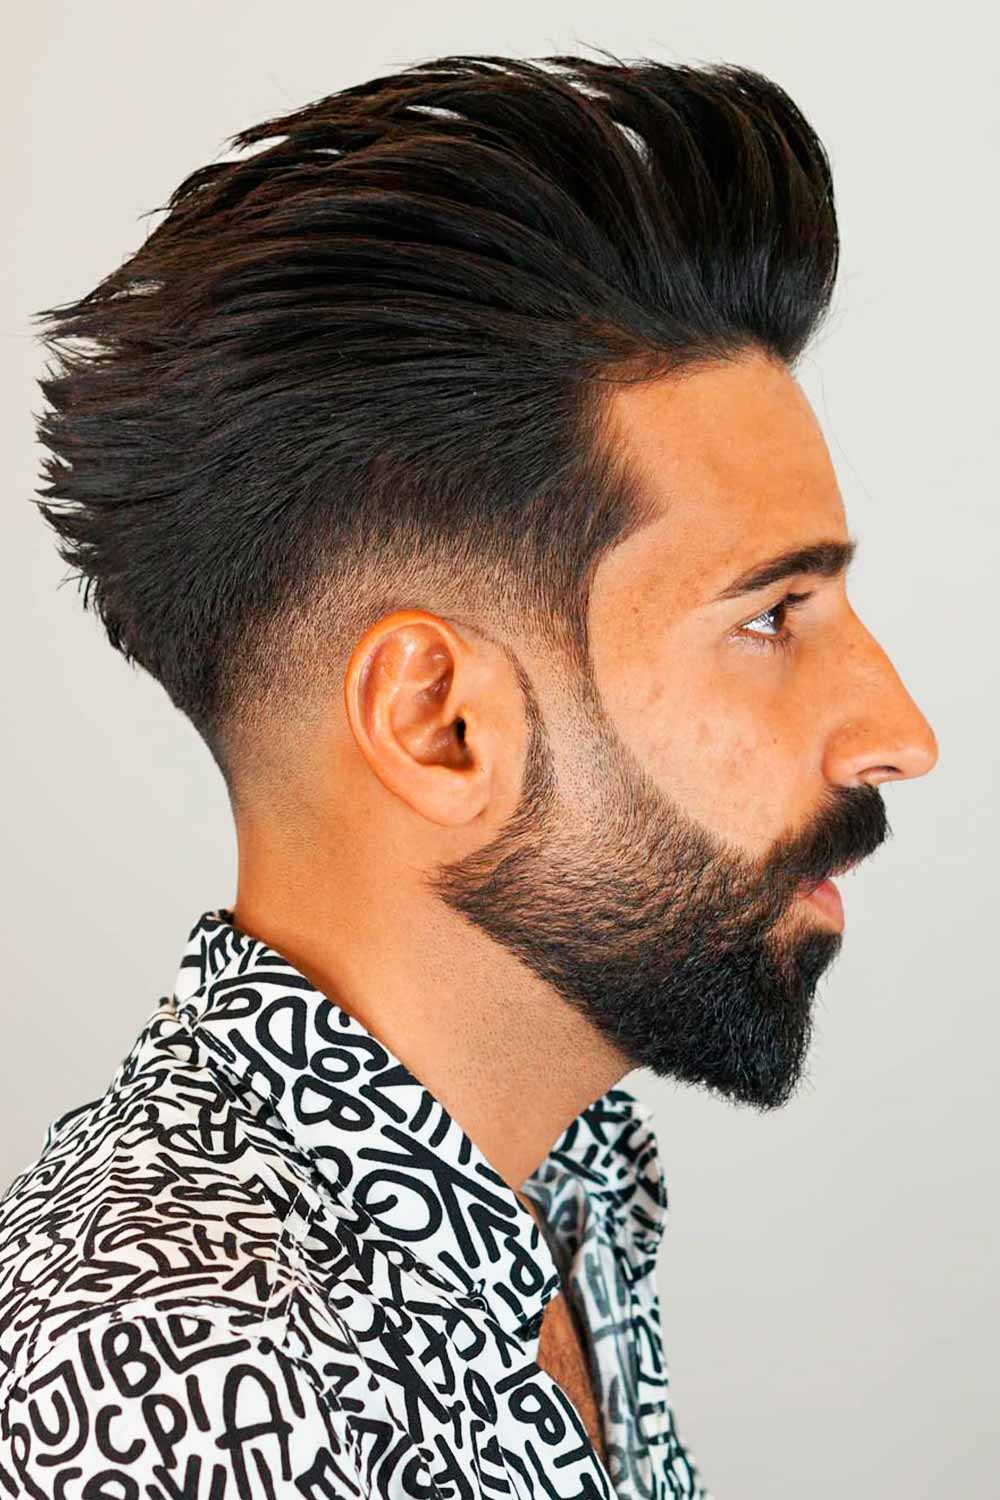 hair style boys wallpaper,hair,facial hair,beard,hairstyle,quiff (#925716)  - WallpaperUse